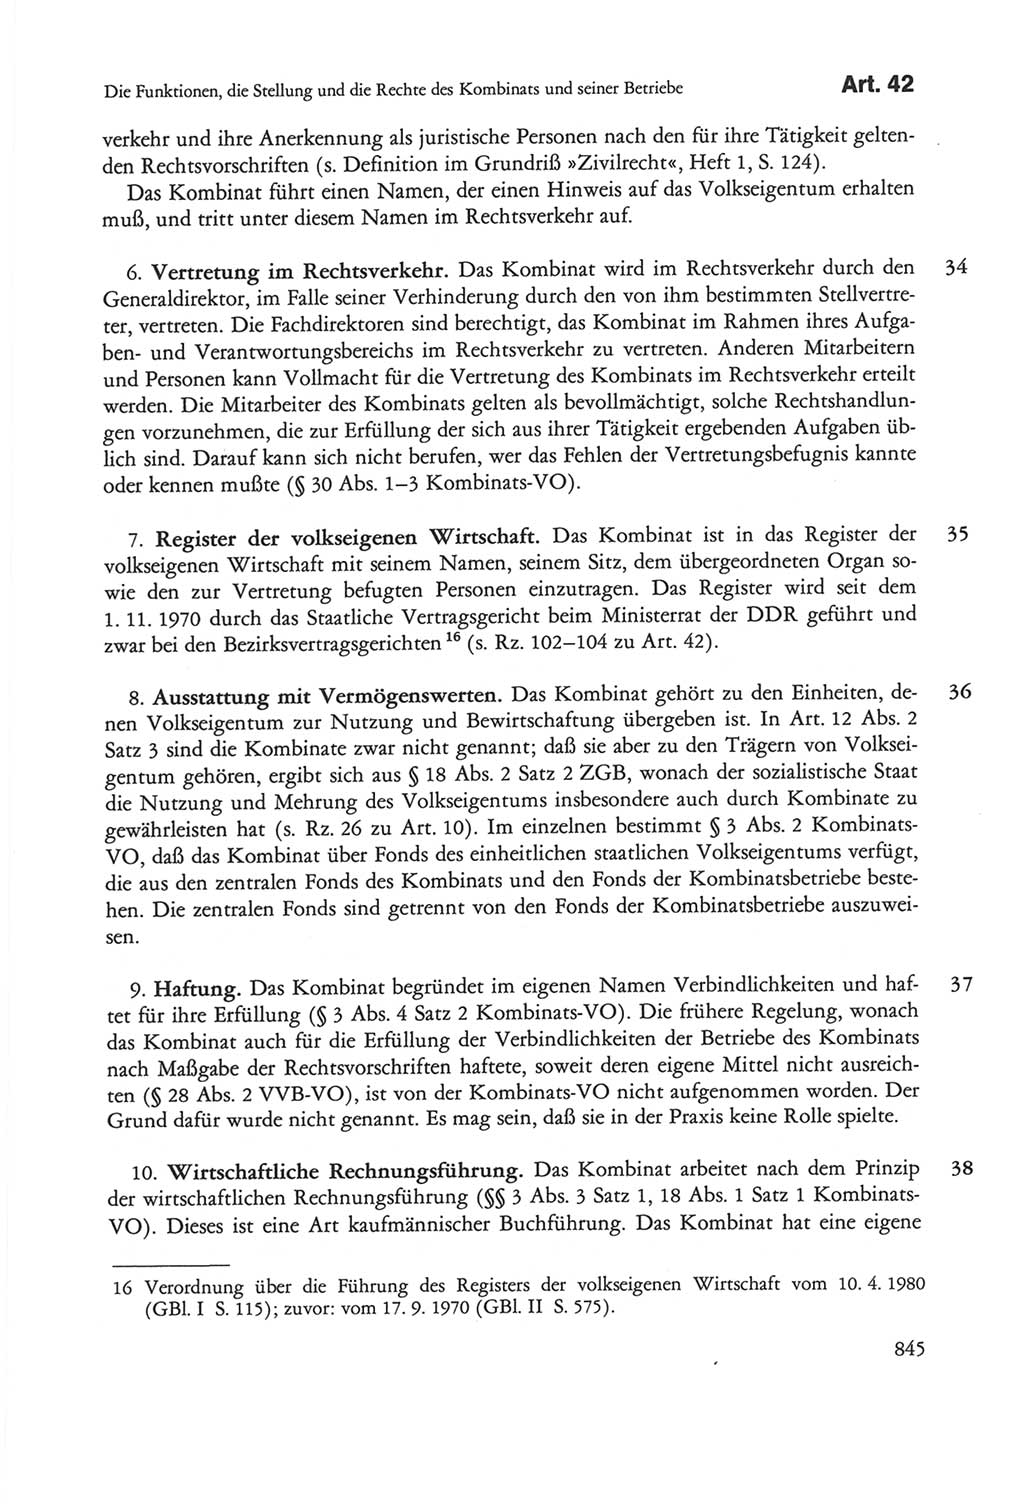 Die sozialistische Verfassung der Deutschen Demokratischen Republik (DDR), Kommentar 1982, Seite 845 (Soz. Verf. DDR Komm. 1982, S. 845)